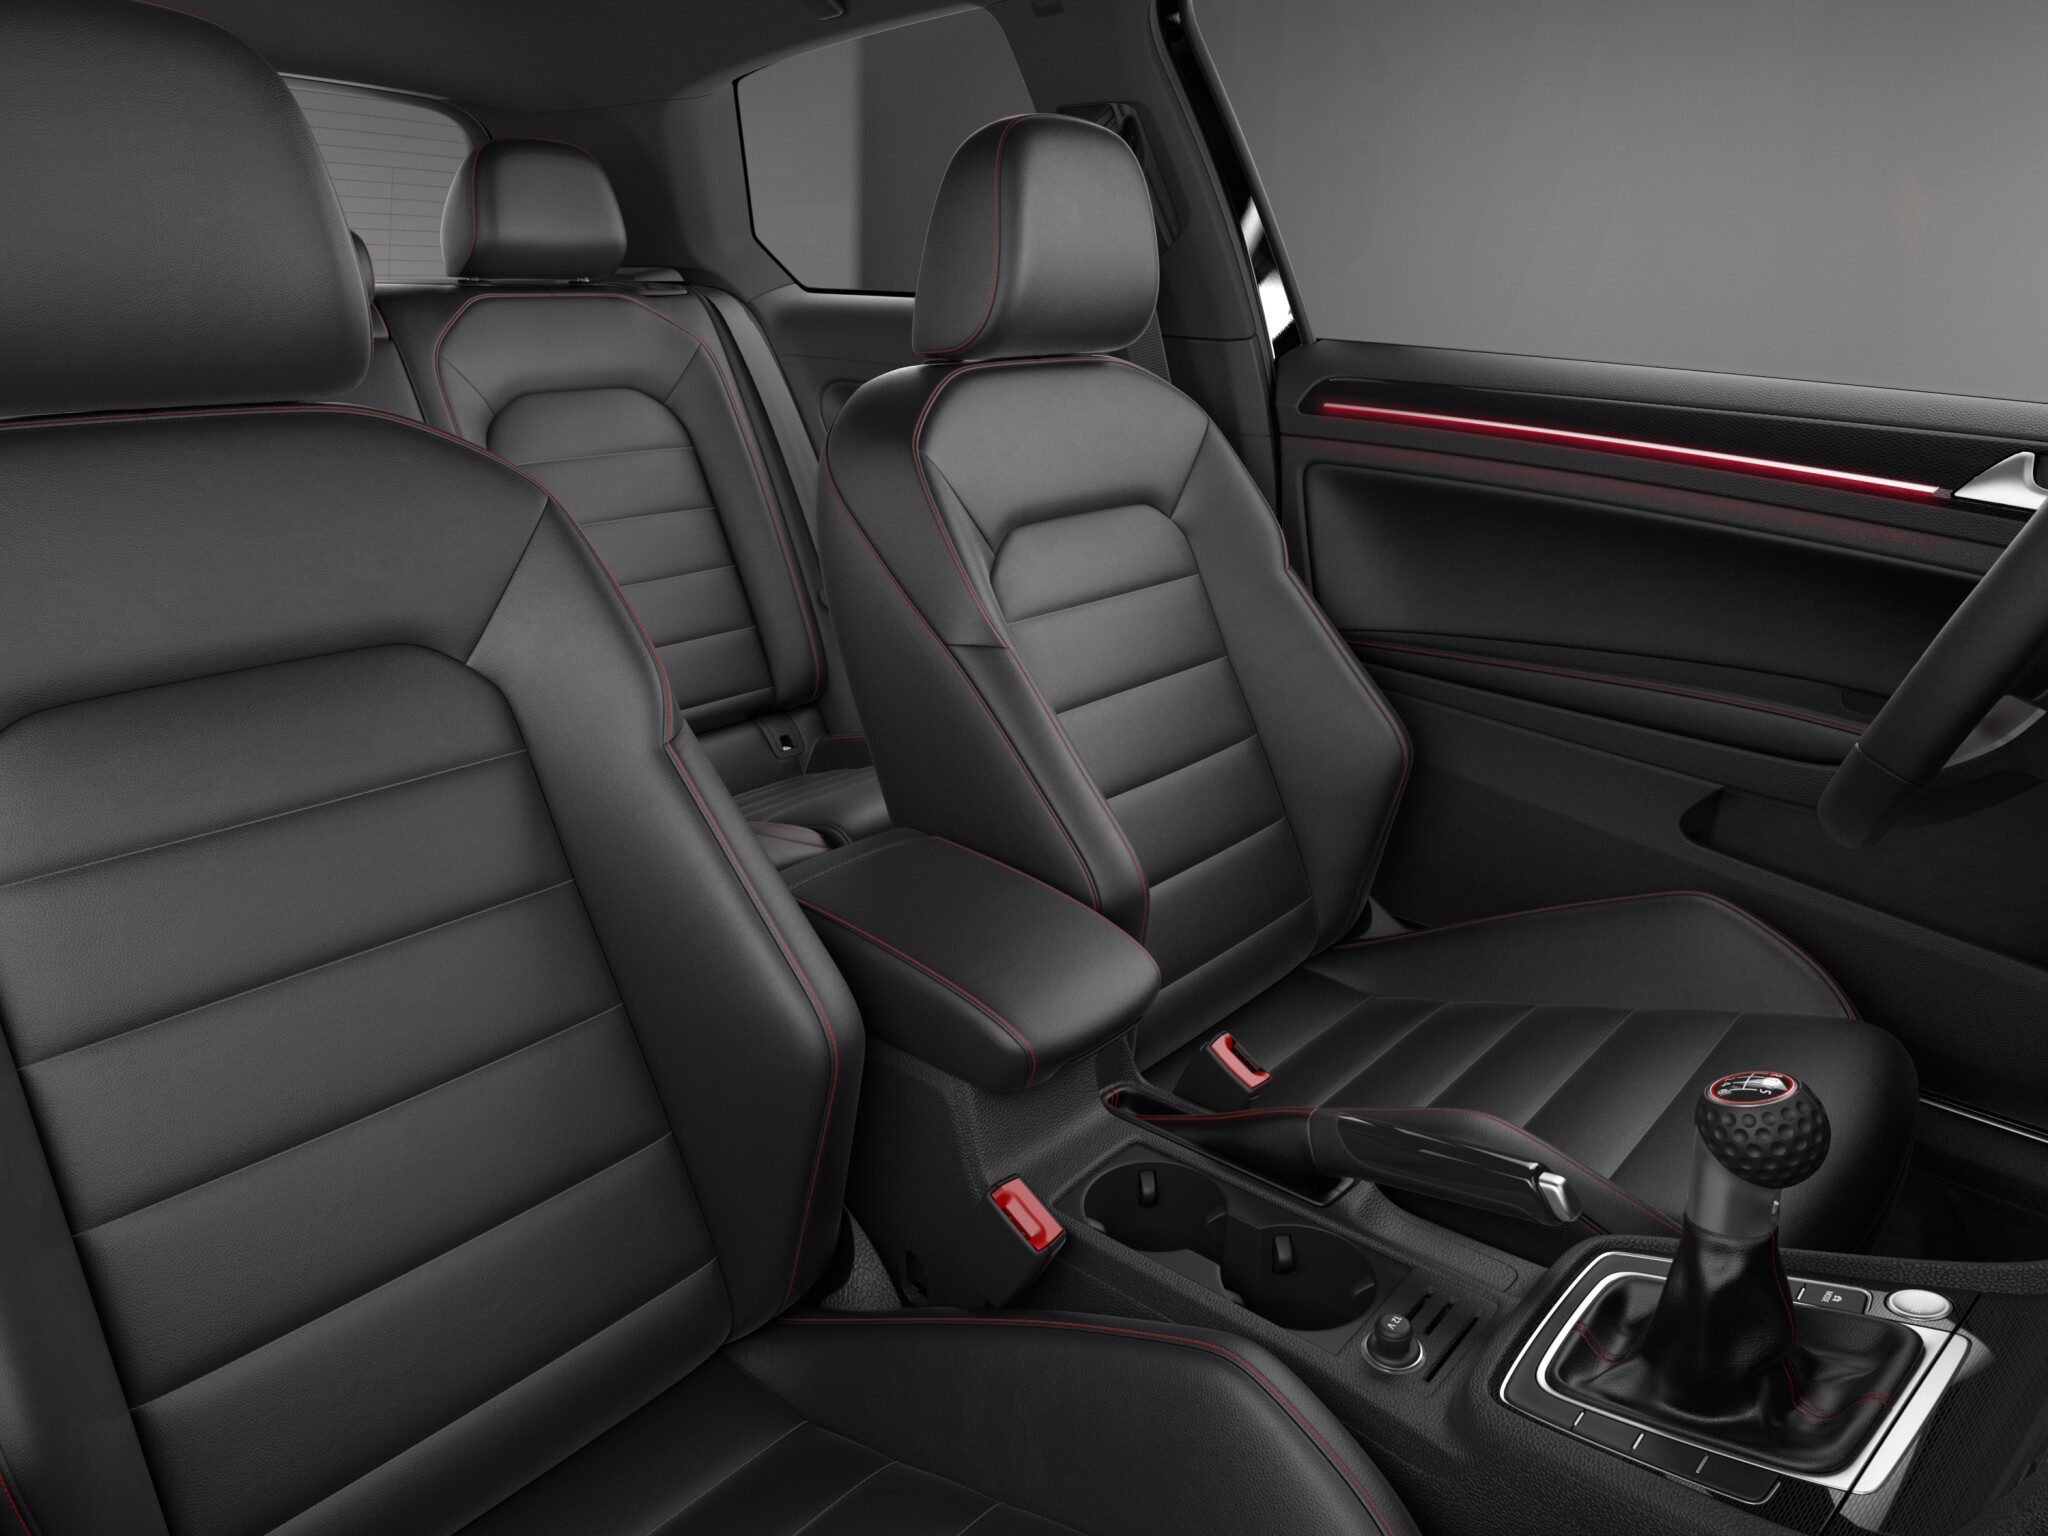 Volkswagen Golf GTI SE 2 Door interior front seat view